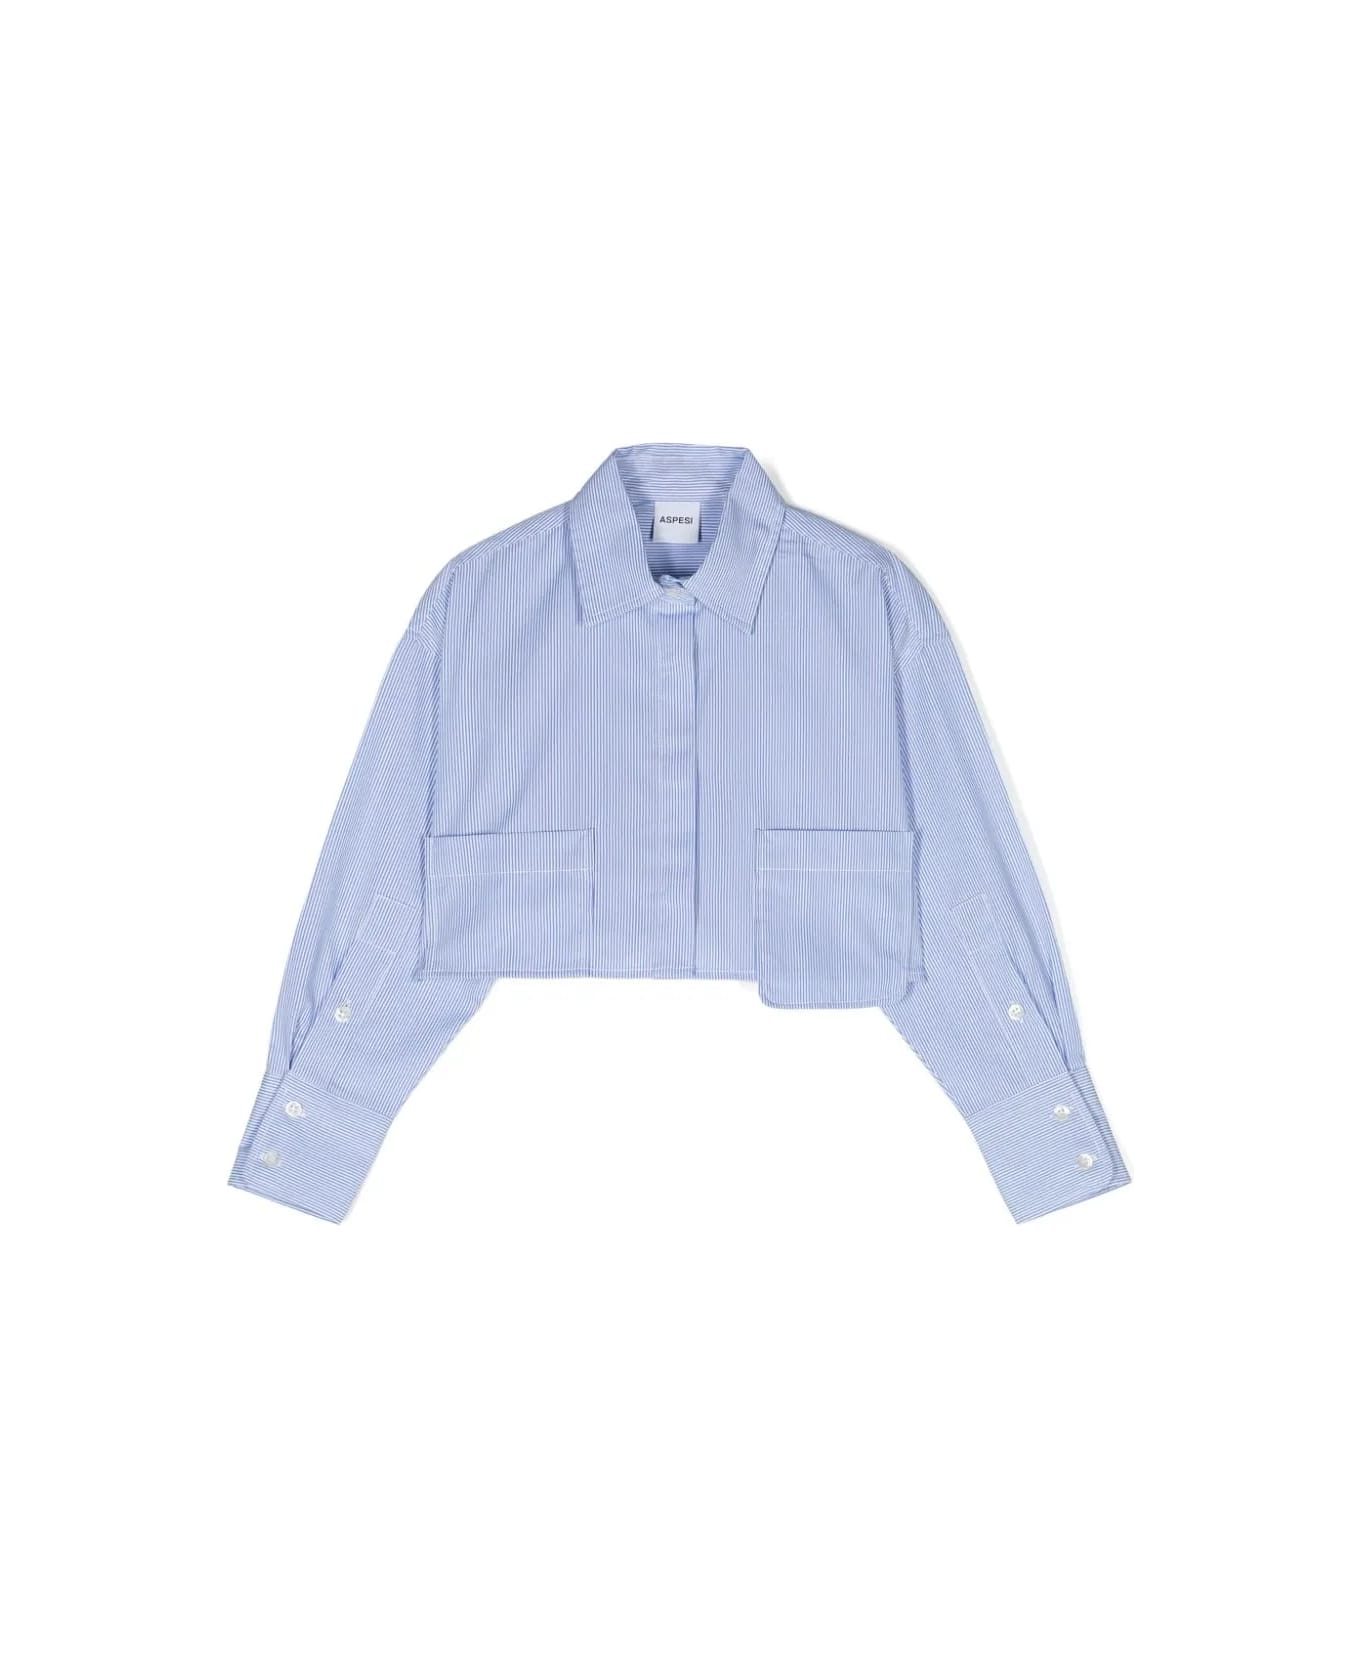 Aspesi Striped Crop Shirt - Light blue